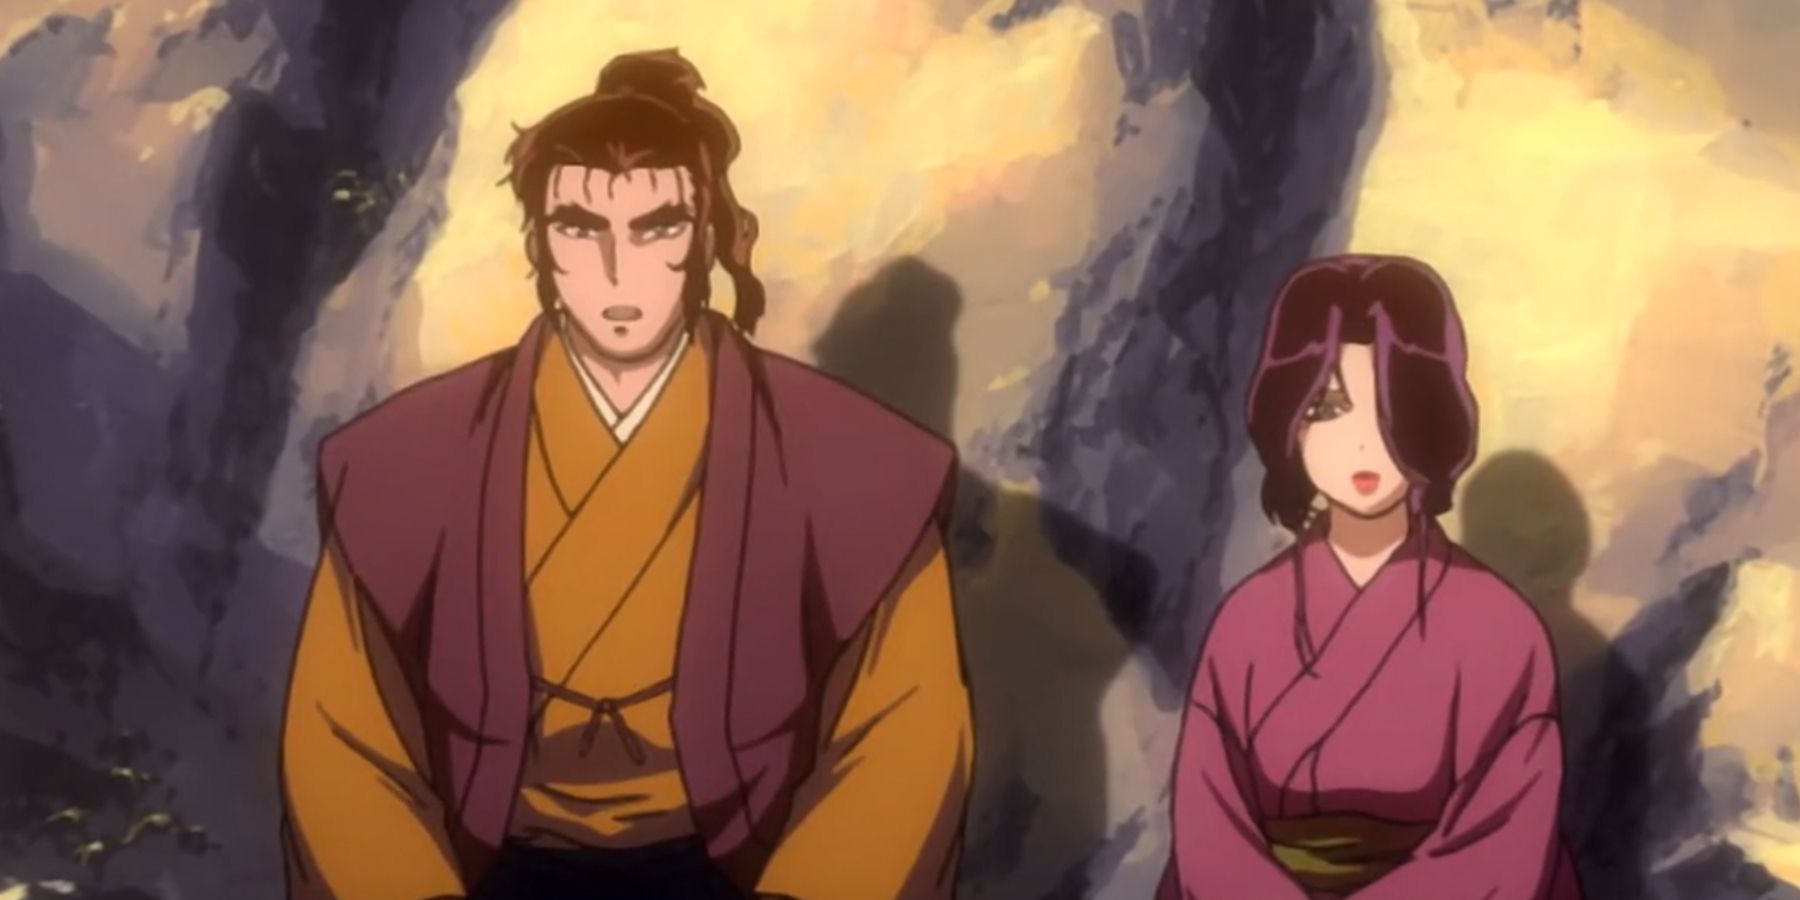 basilisk anime episode 1 gennosuke and oboro